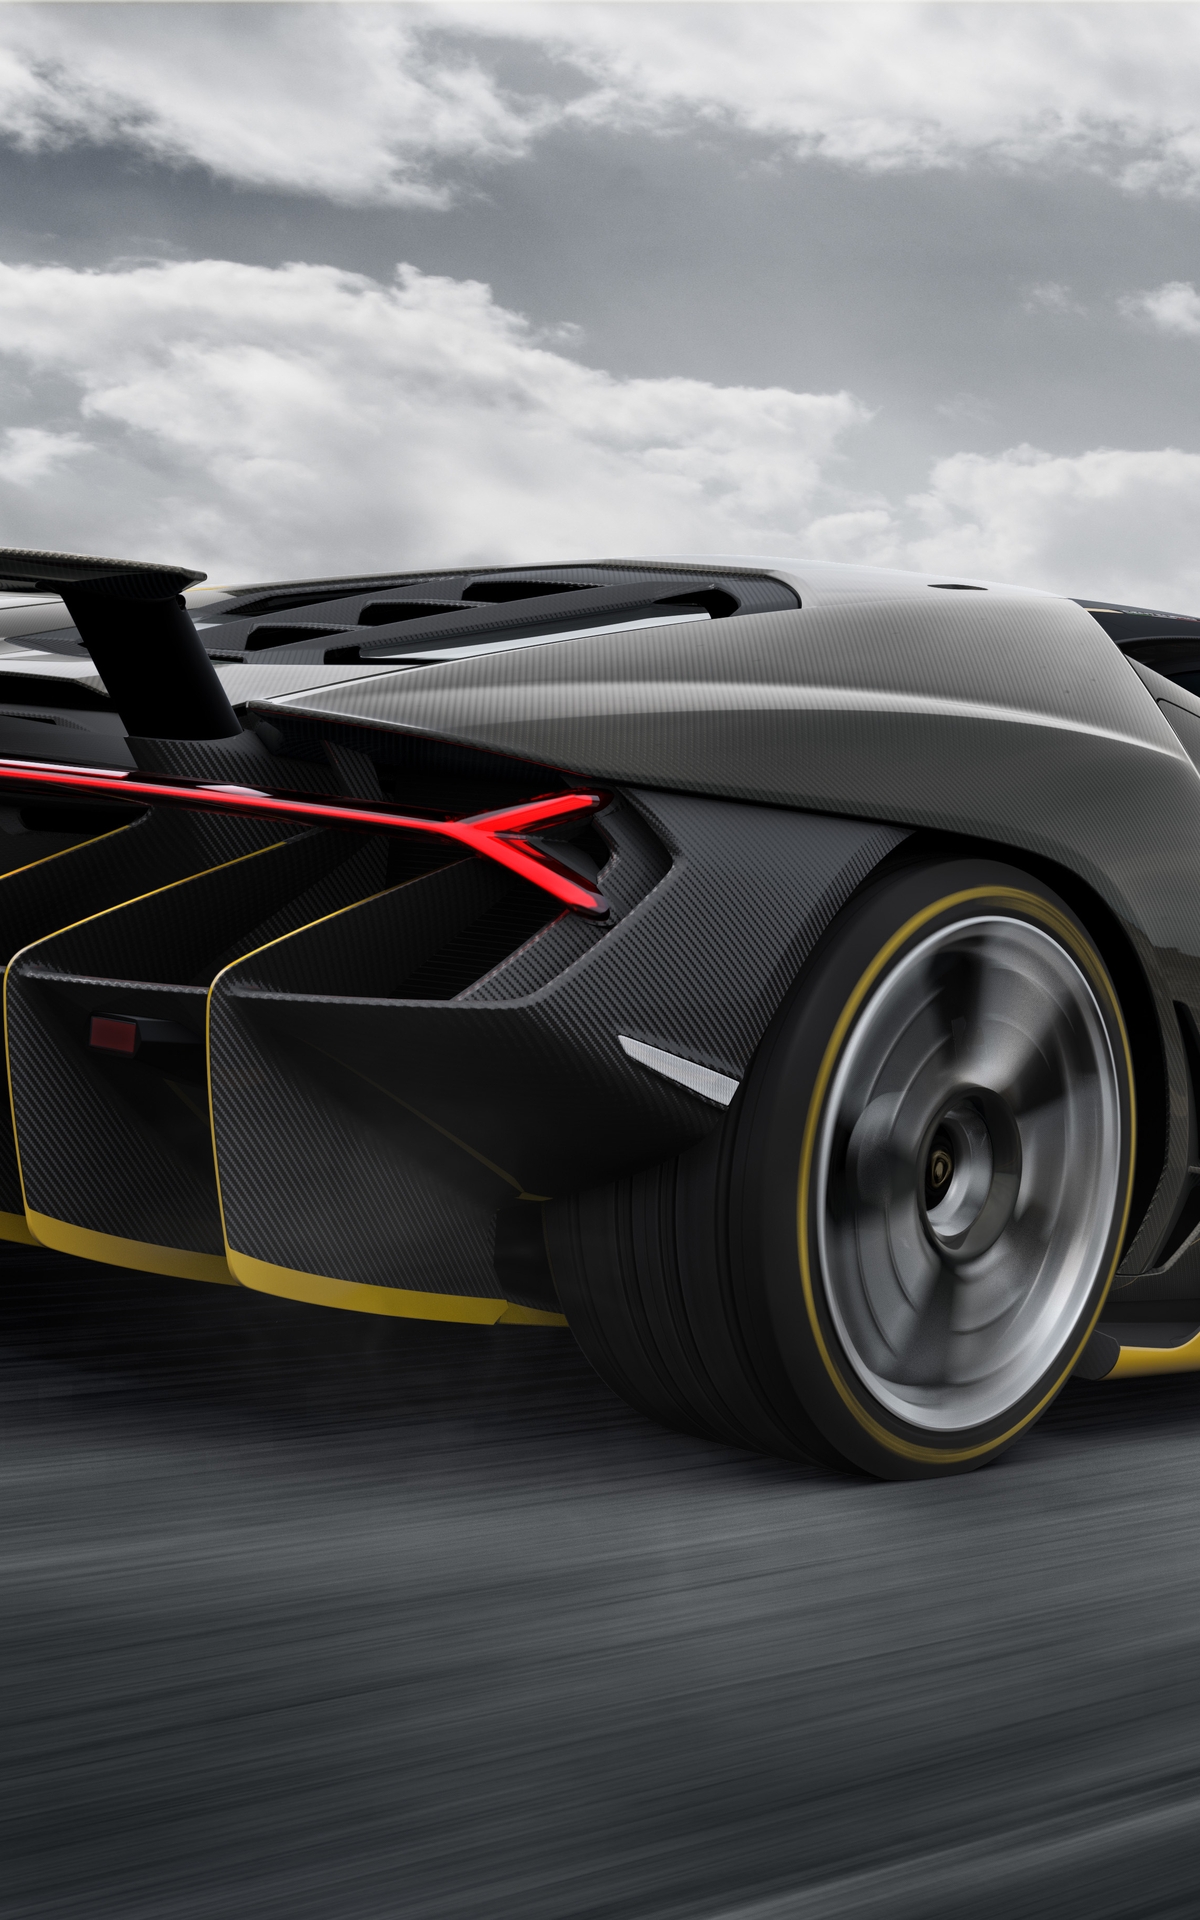 Image: Lamborghini, Centenario, LP 770-4, sports car, speed, traffic, road